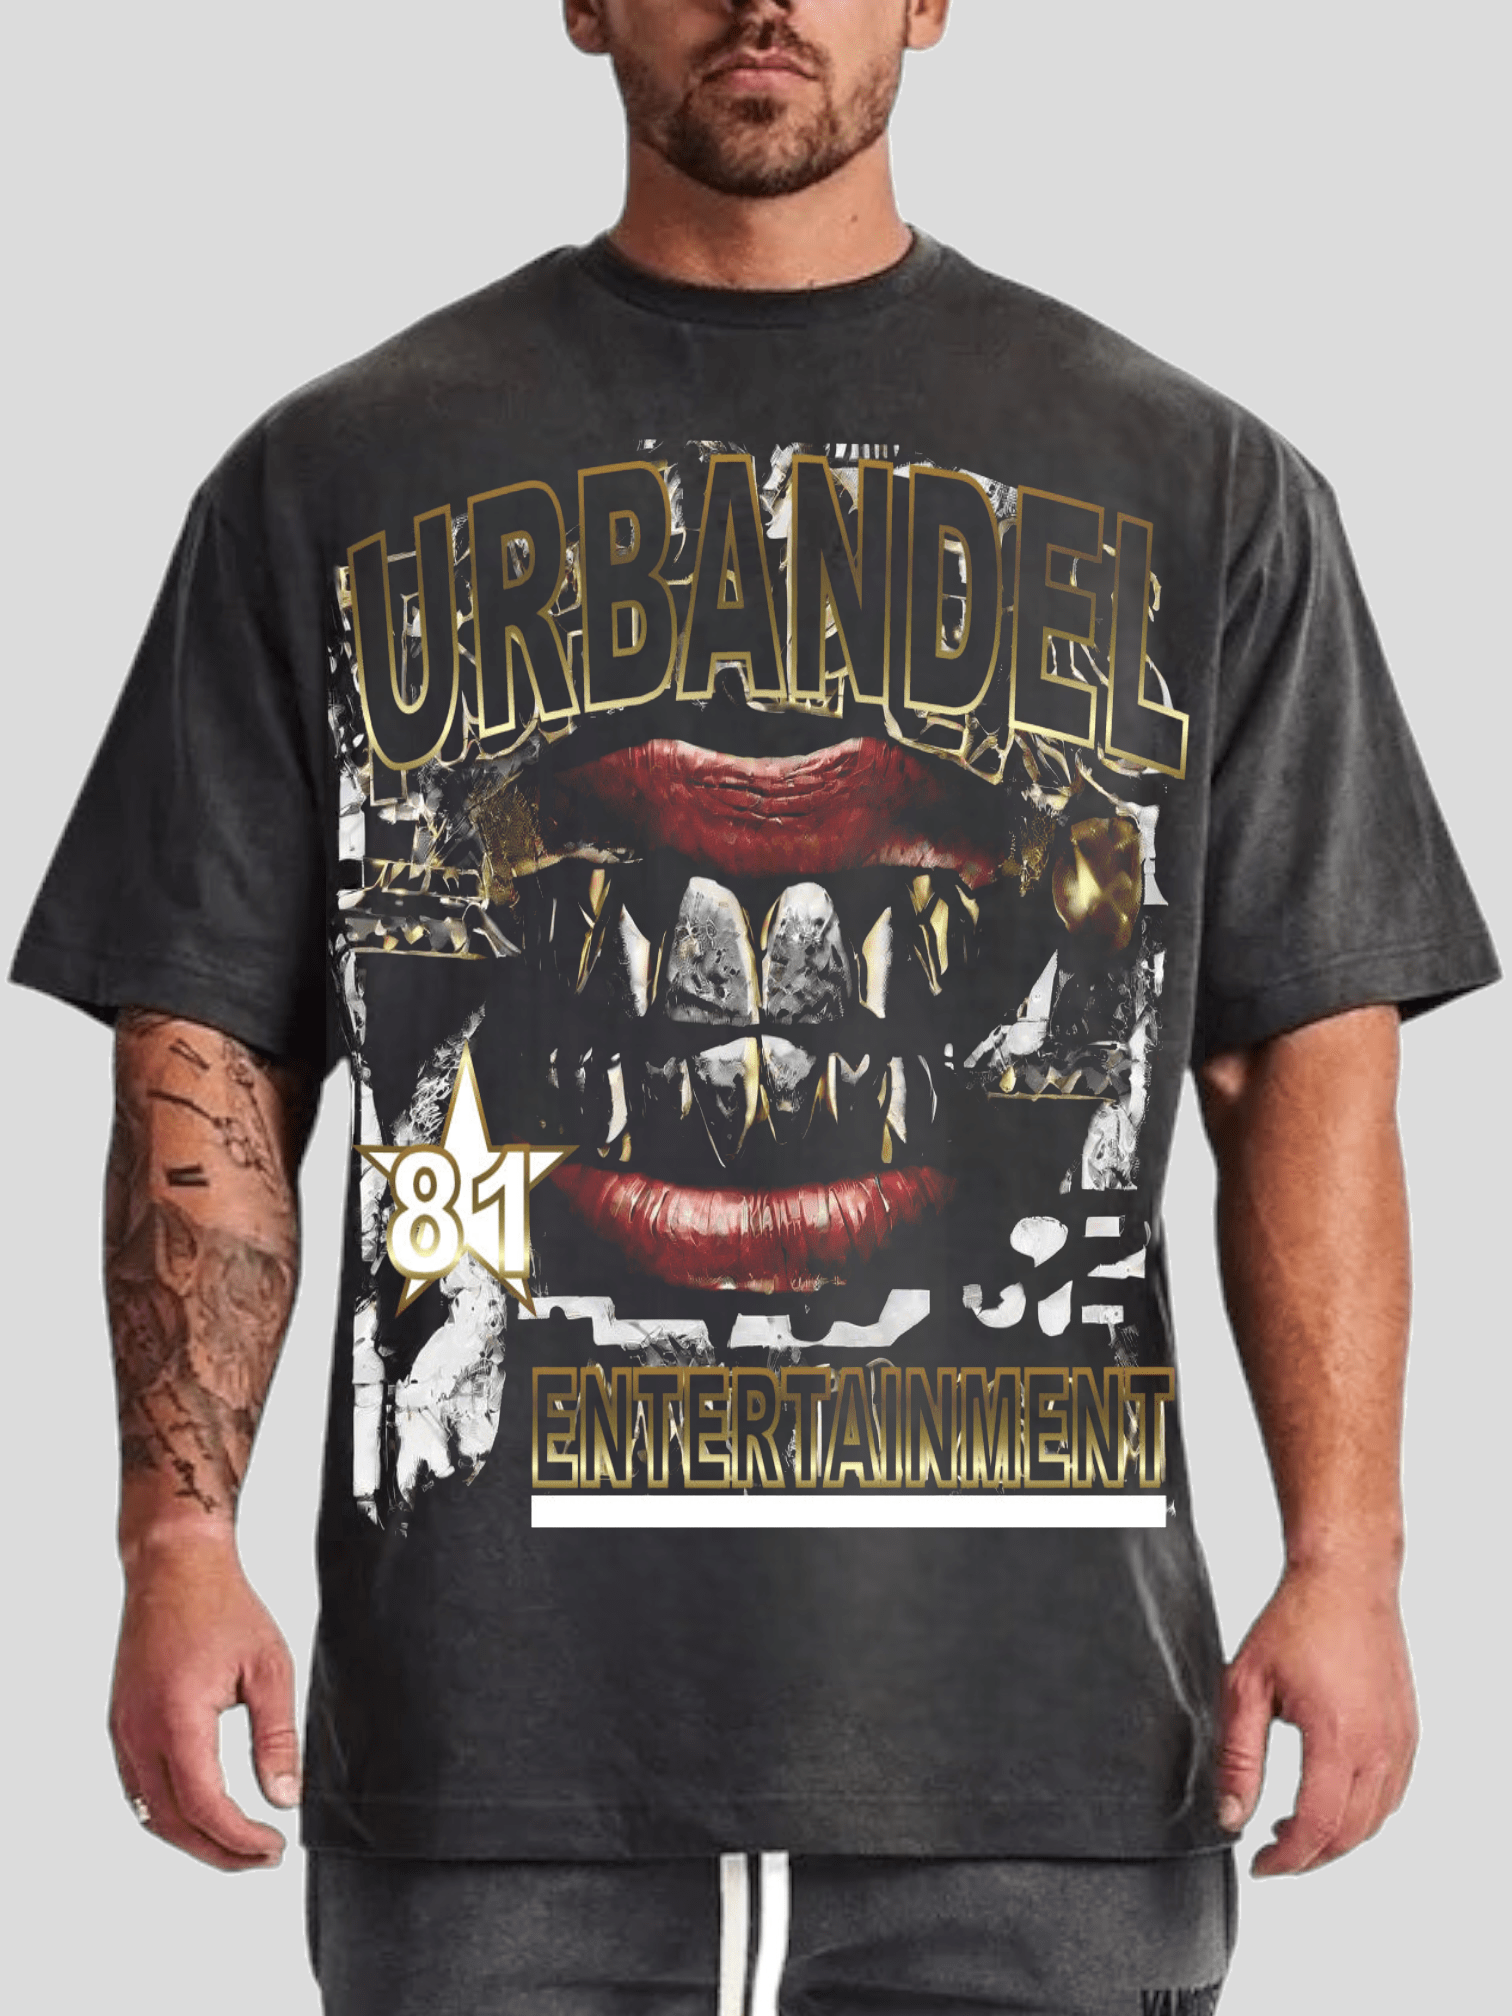 Urbandel tshits Urbandel Entertainment T-shirt